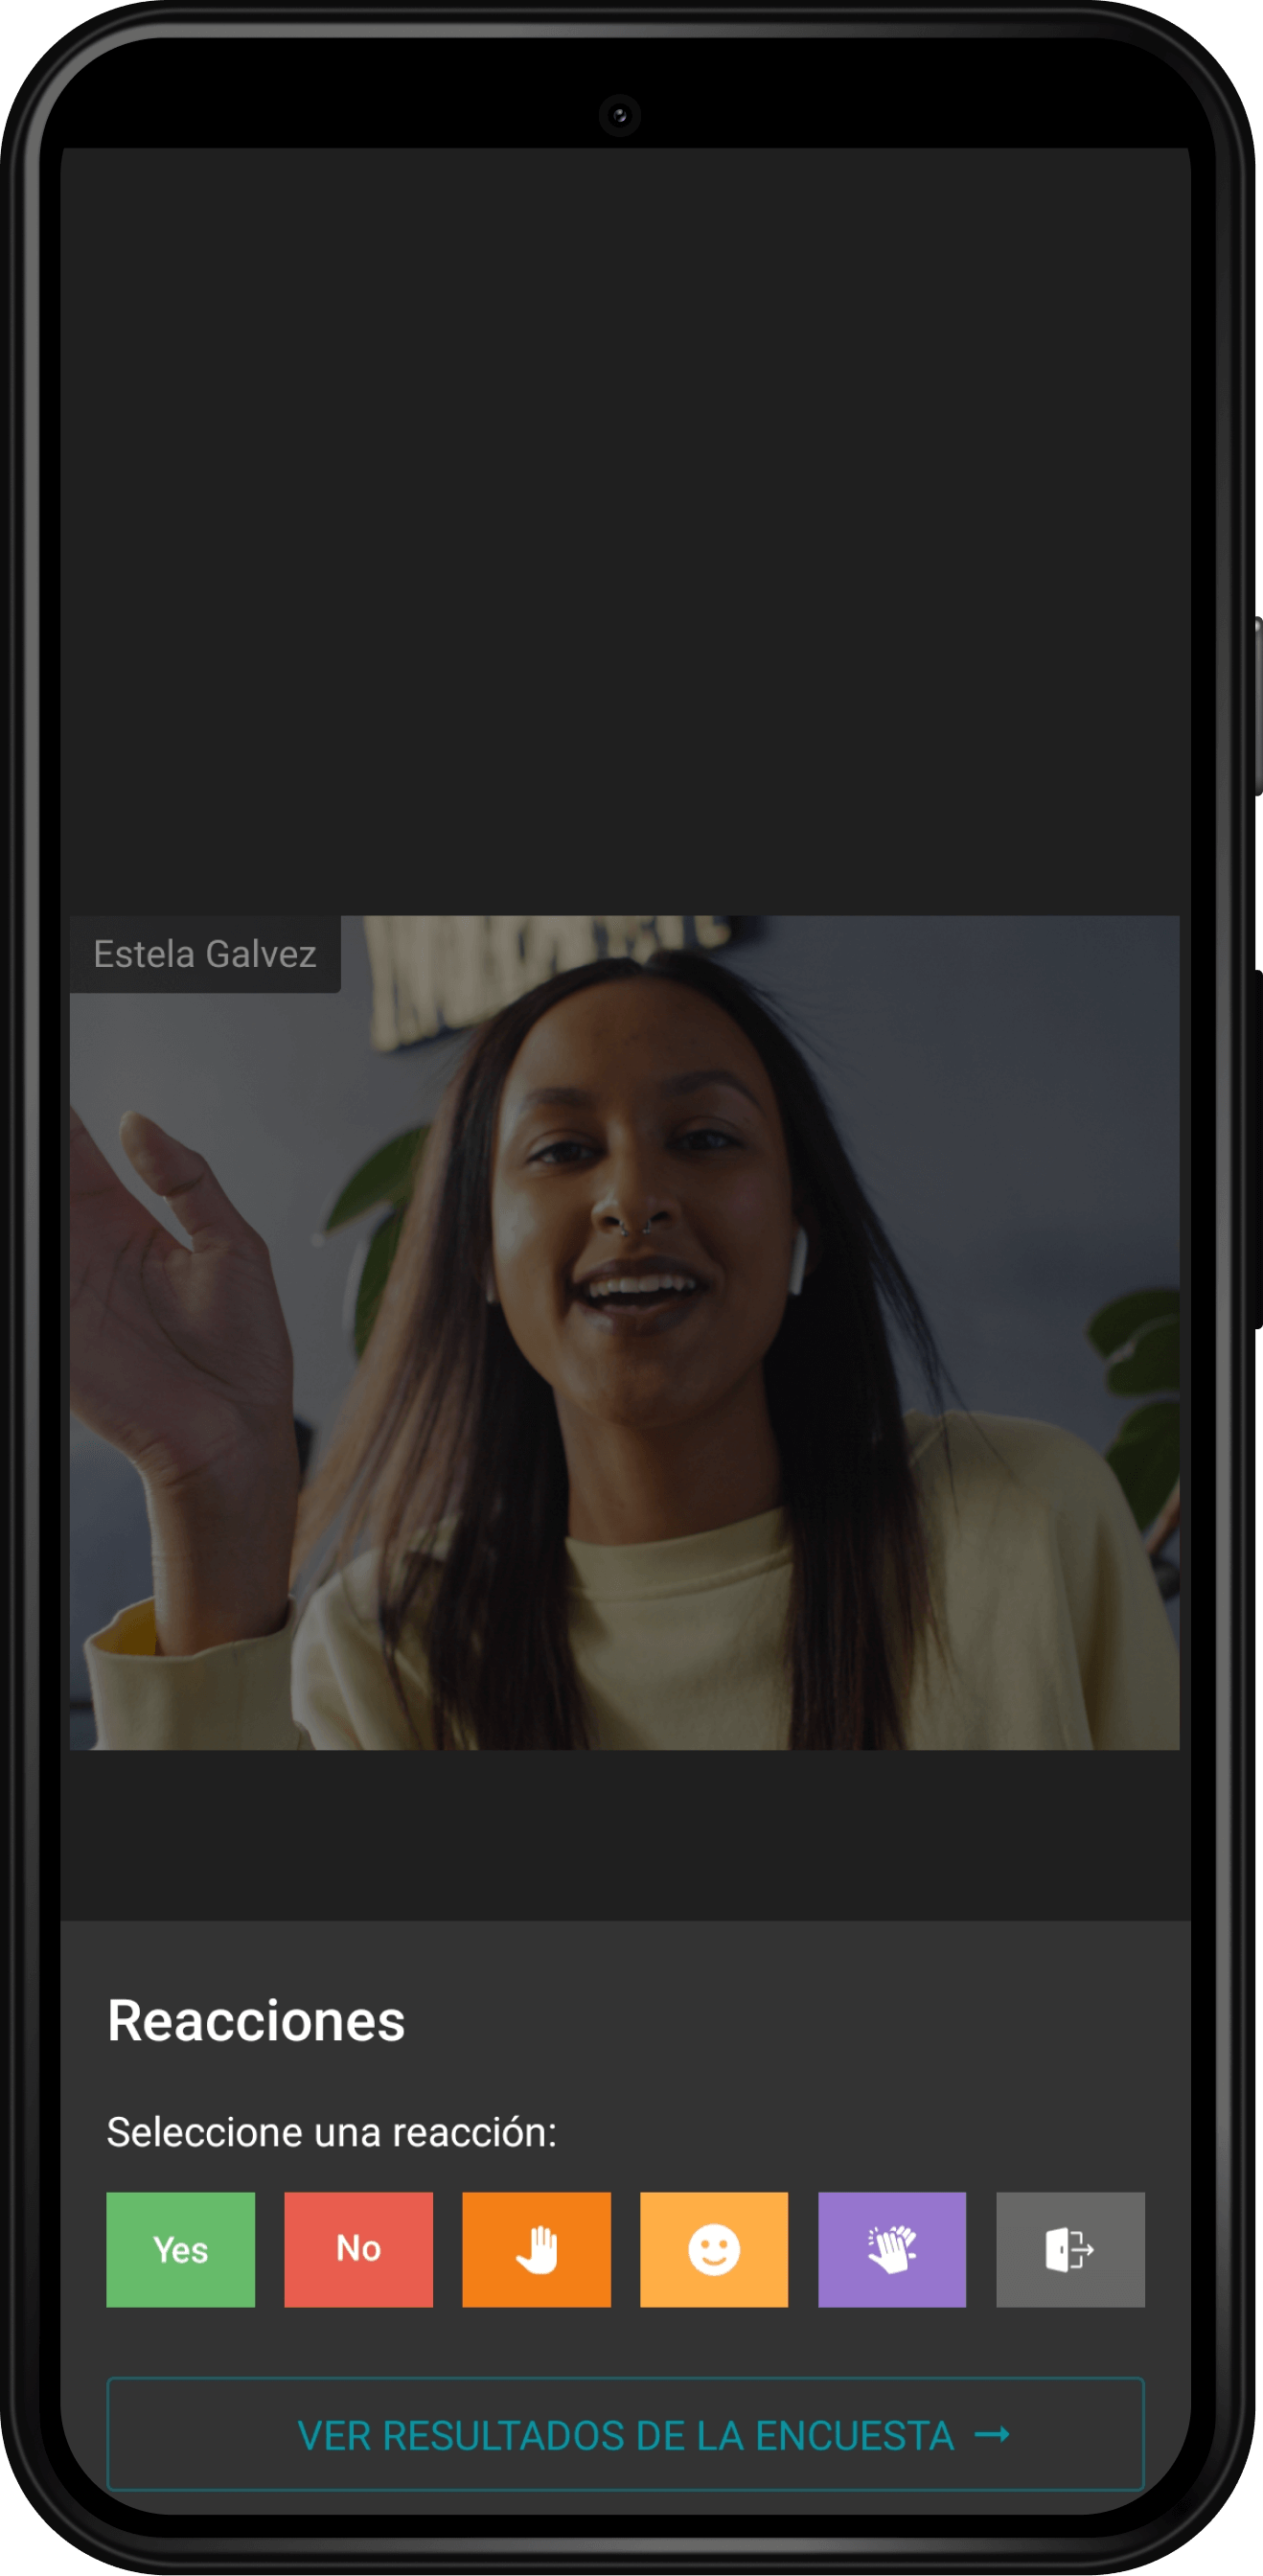 TrueConf 2.0 para Android: la aplicación todo en uno de videoconferencias y mensajería en equipo 35